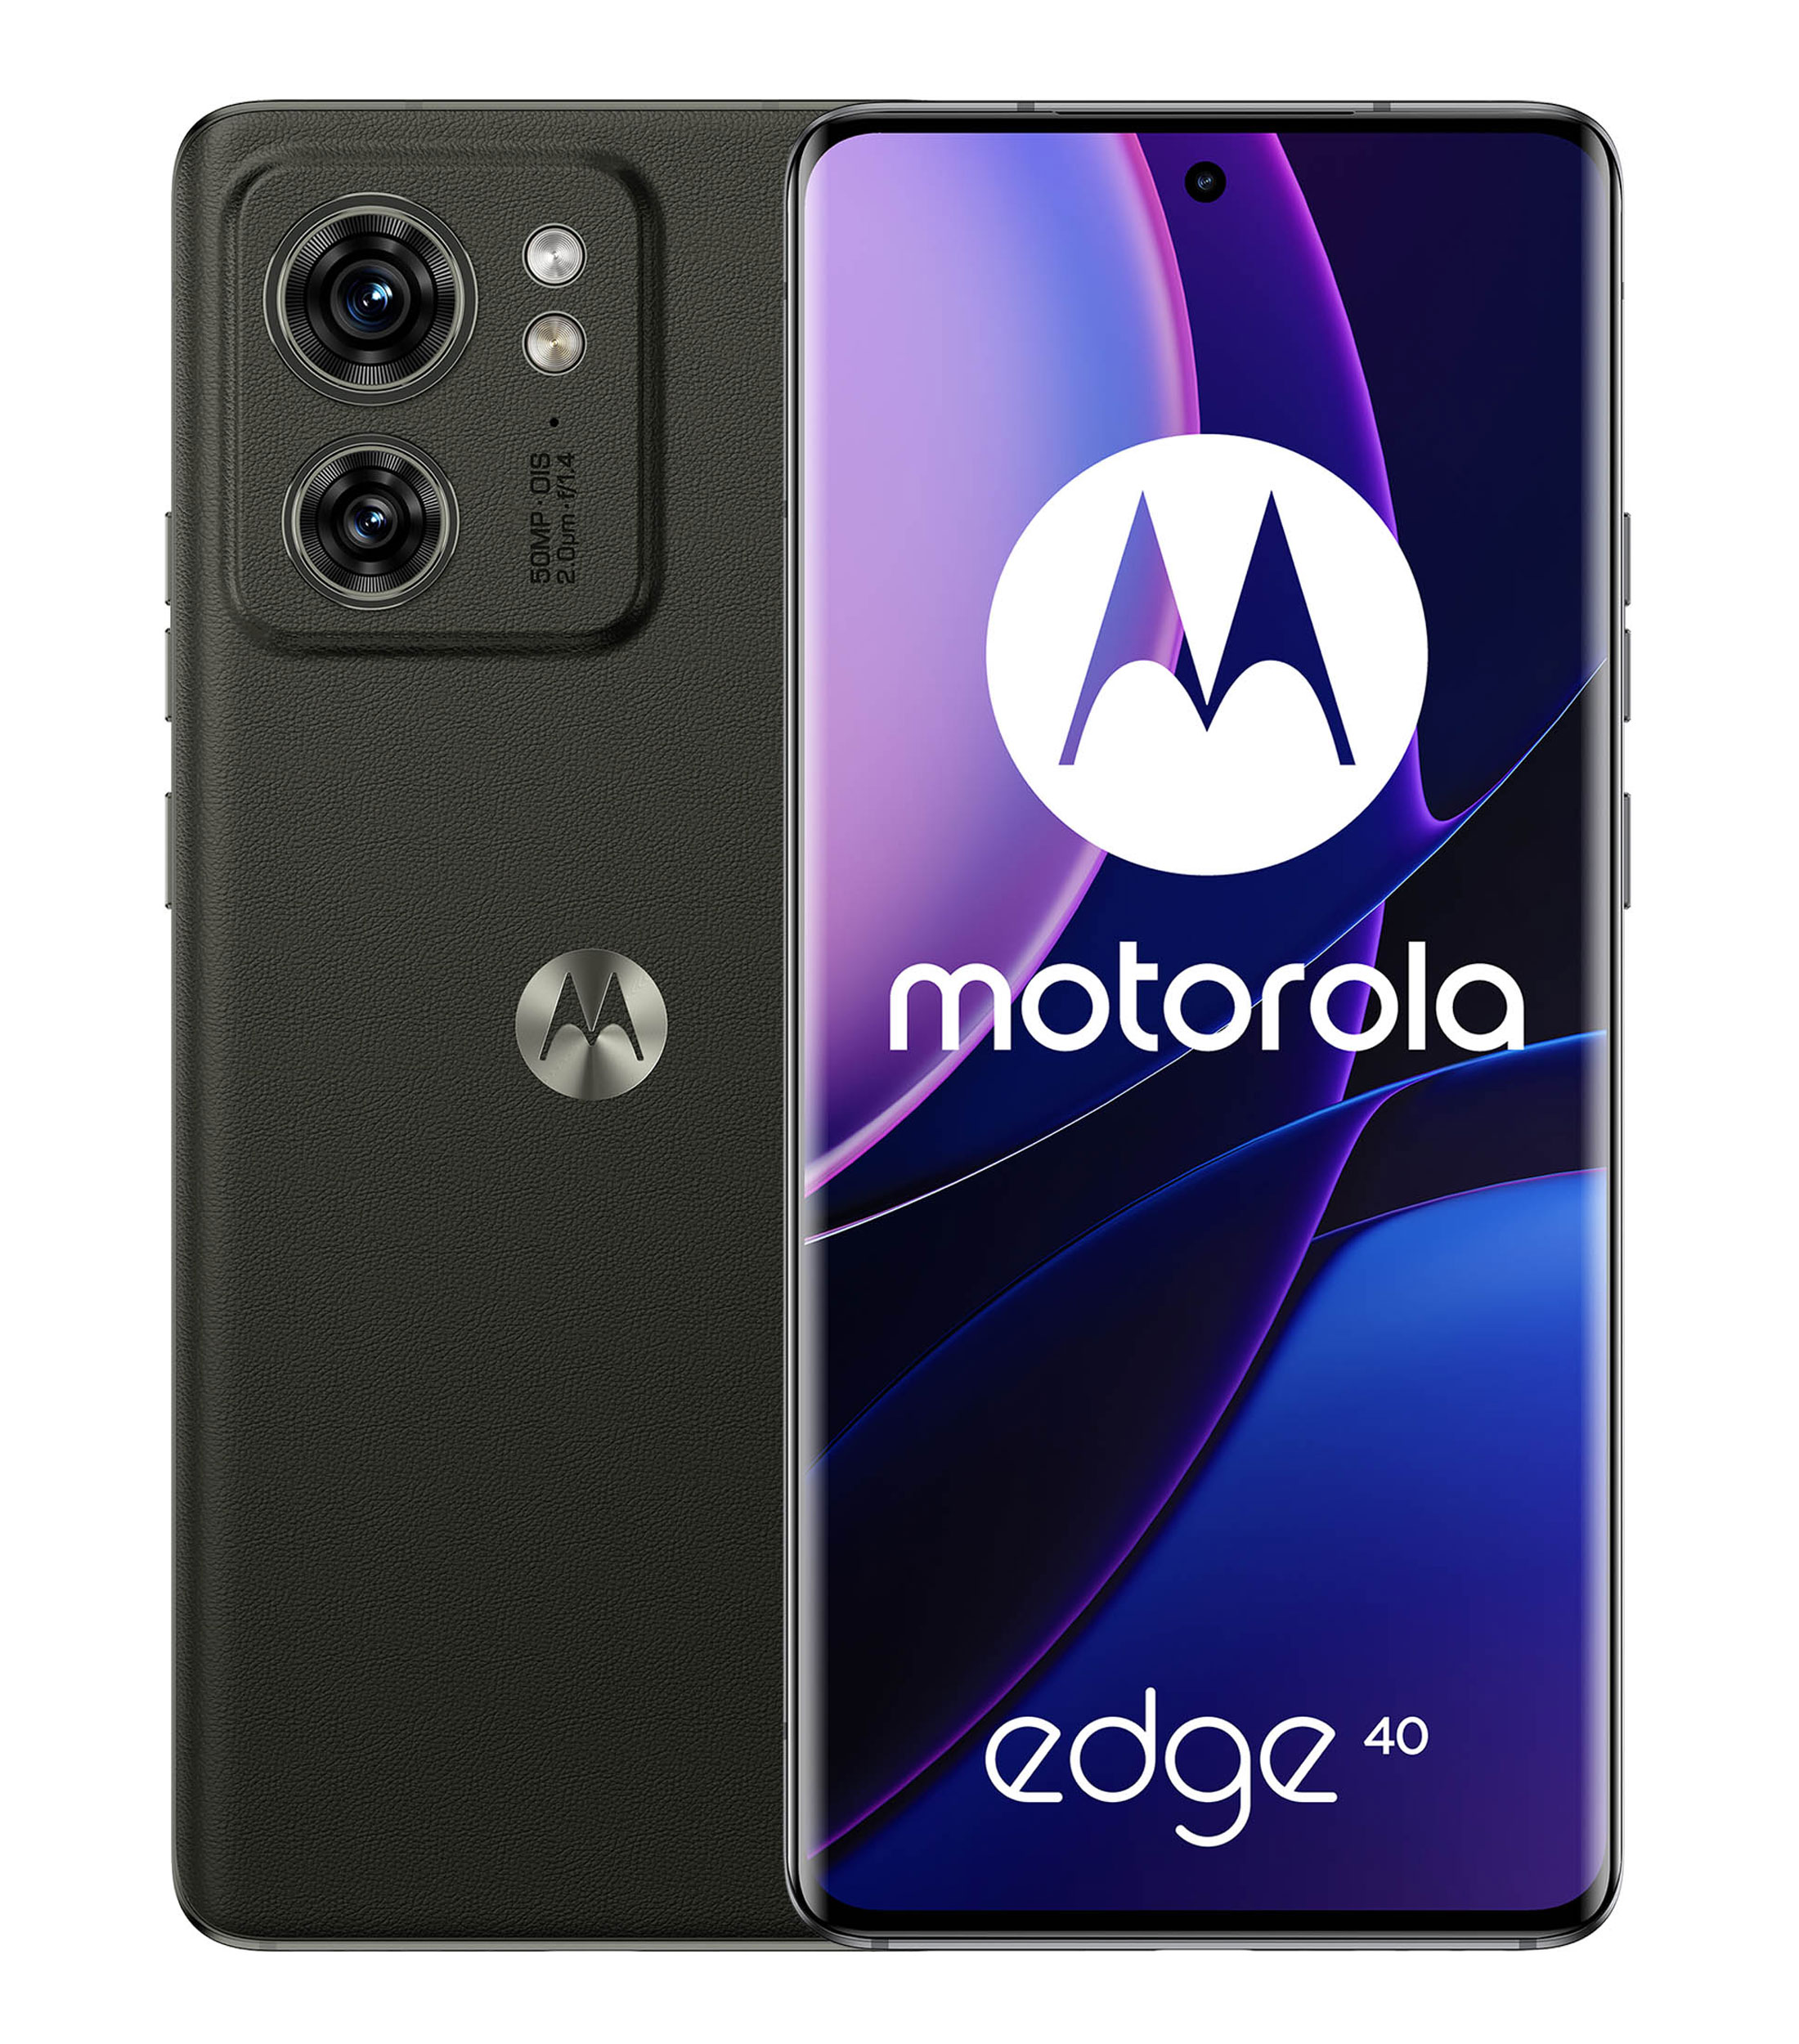 Motorola Moto edge 40 Poled 6.5 pulgadas desbloqueado